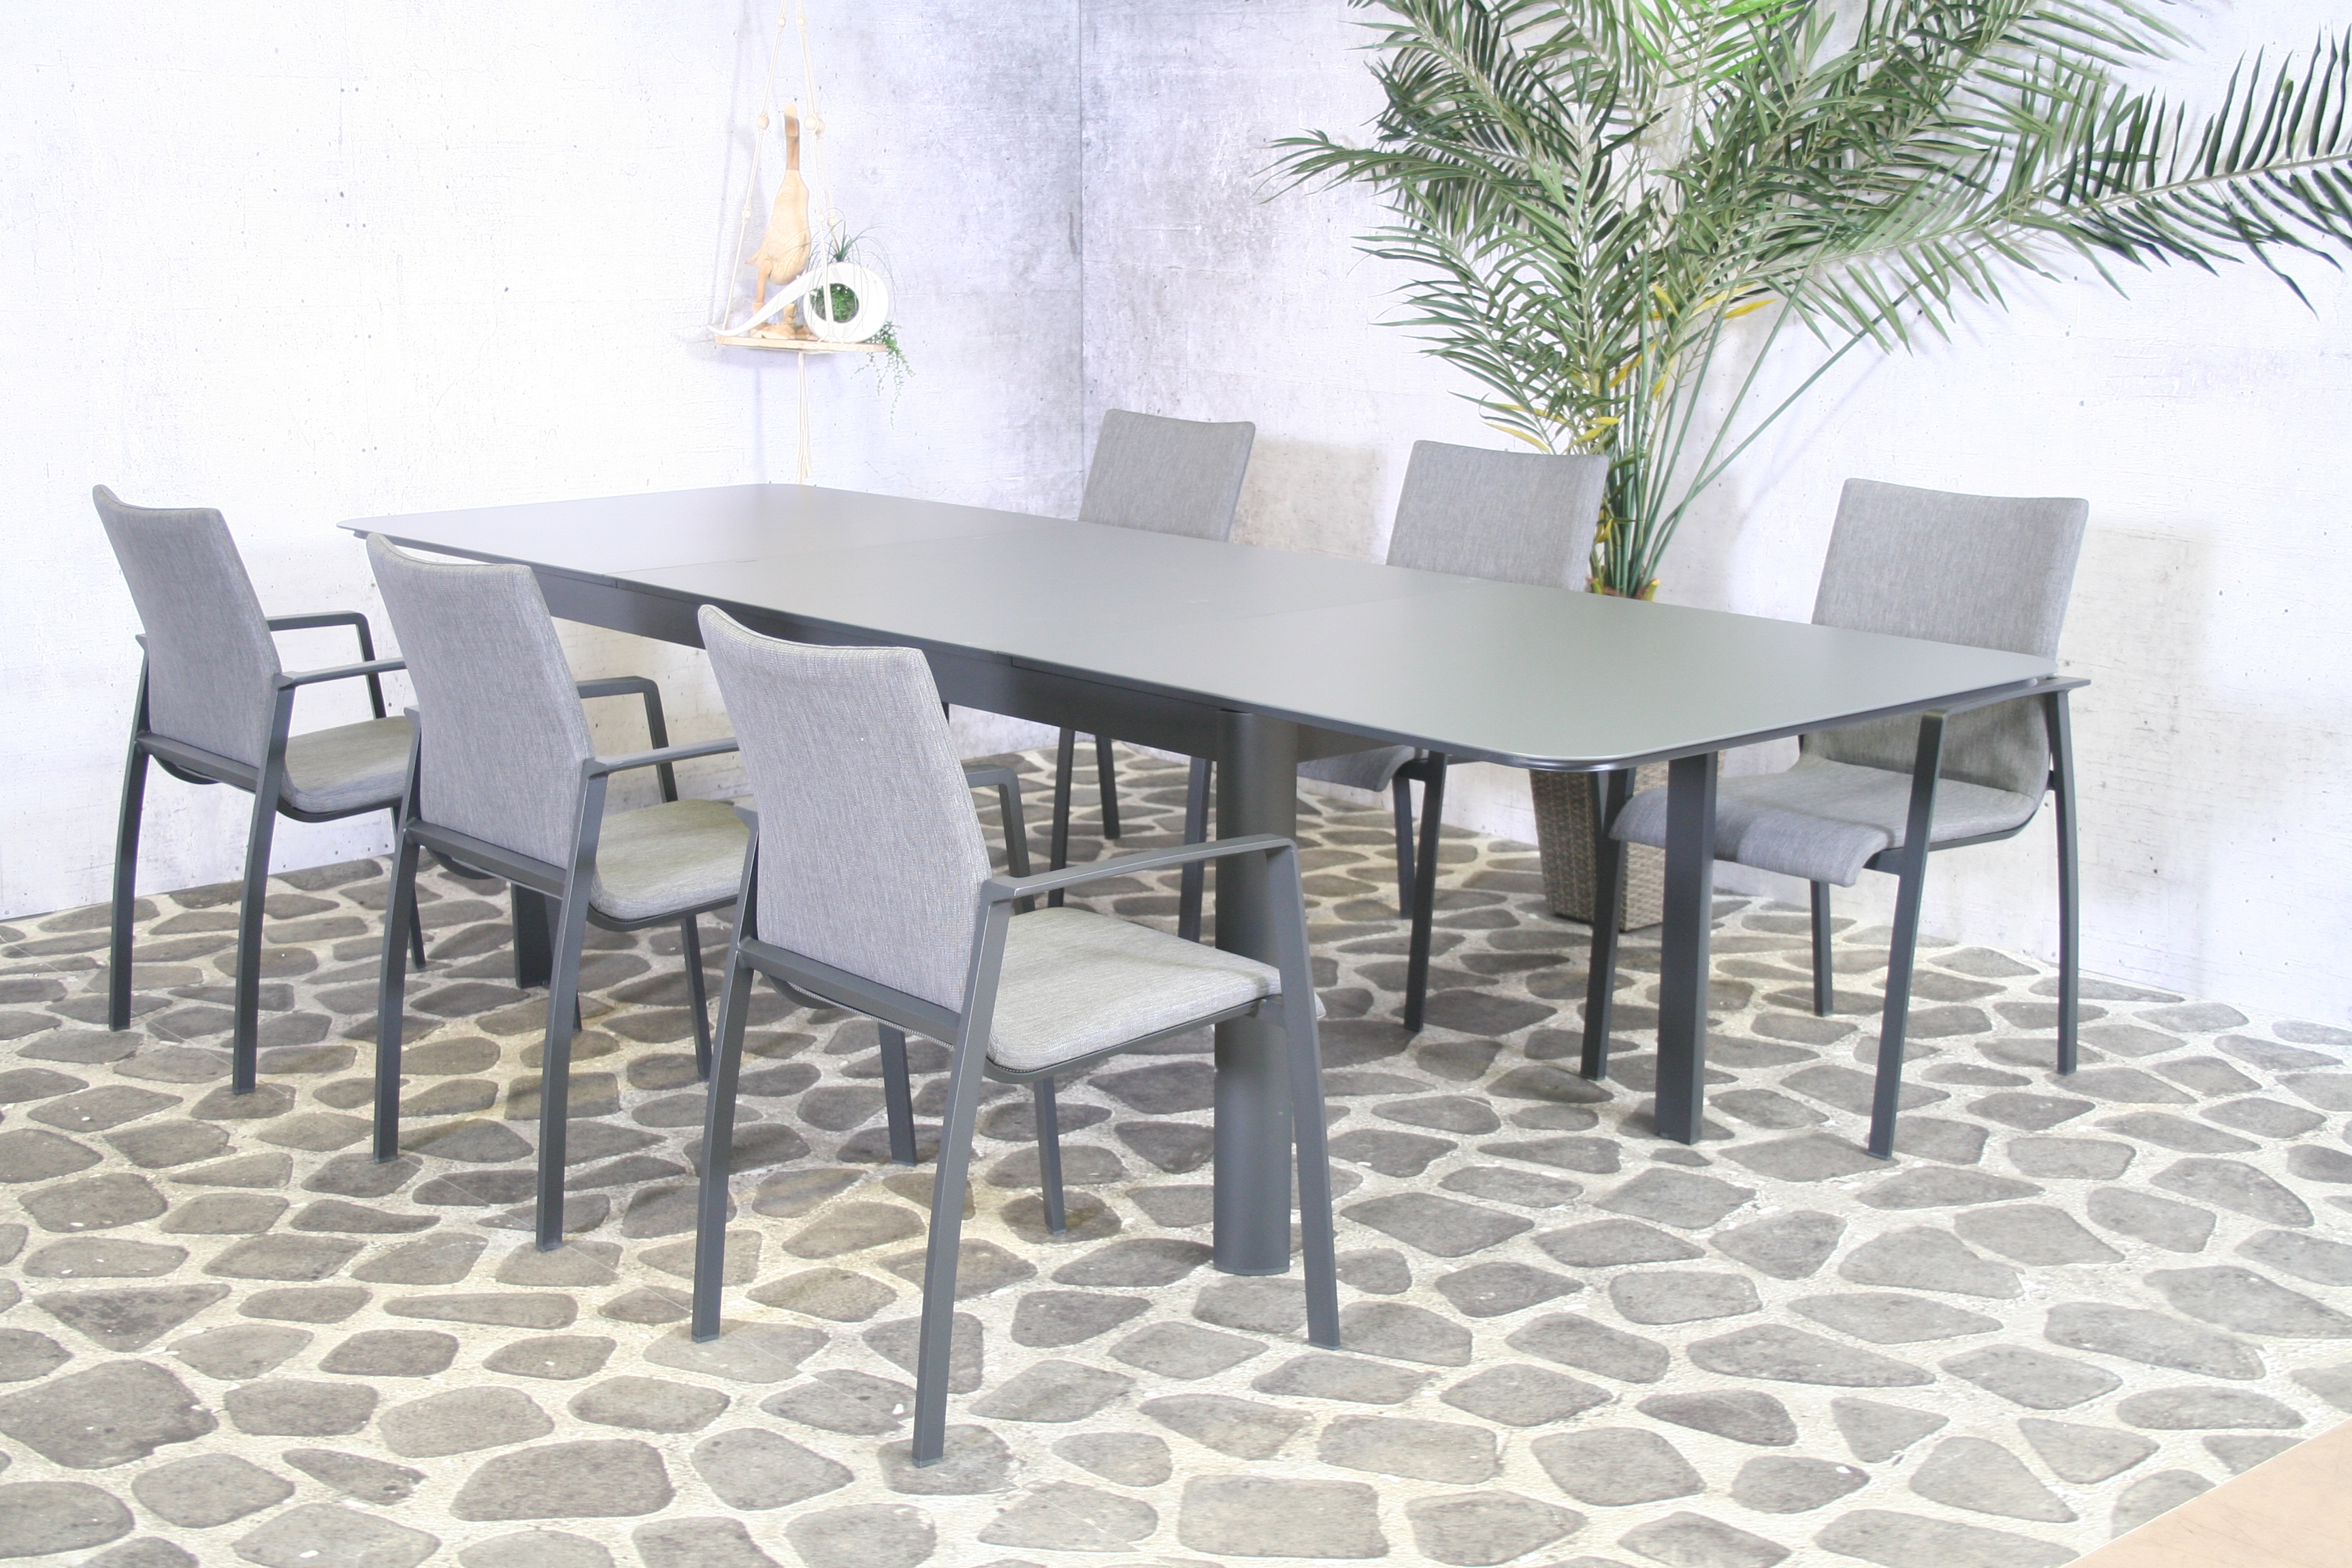 Essgruppe Solero - Tisch 200/300cm x 100cm mit 6 Stapelstühlen Solero